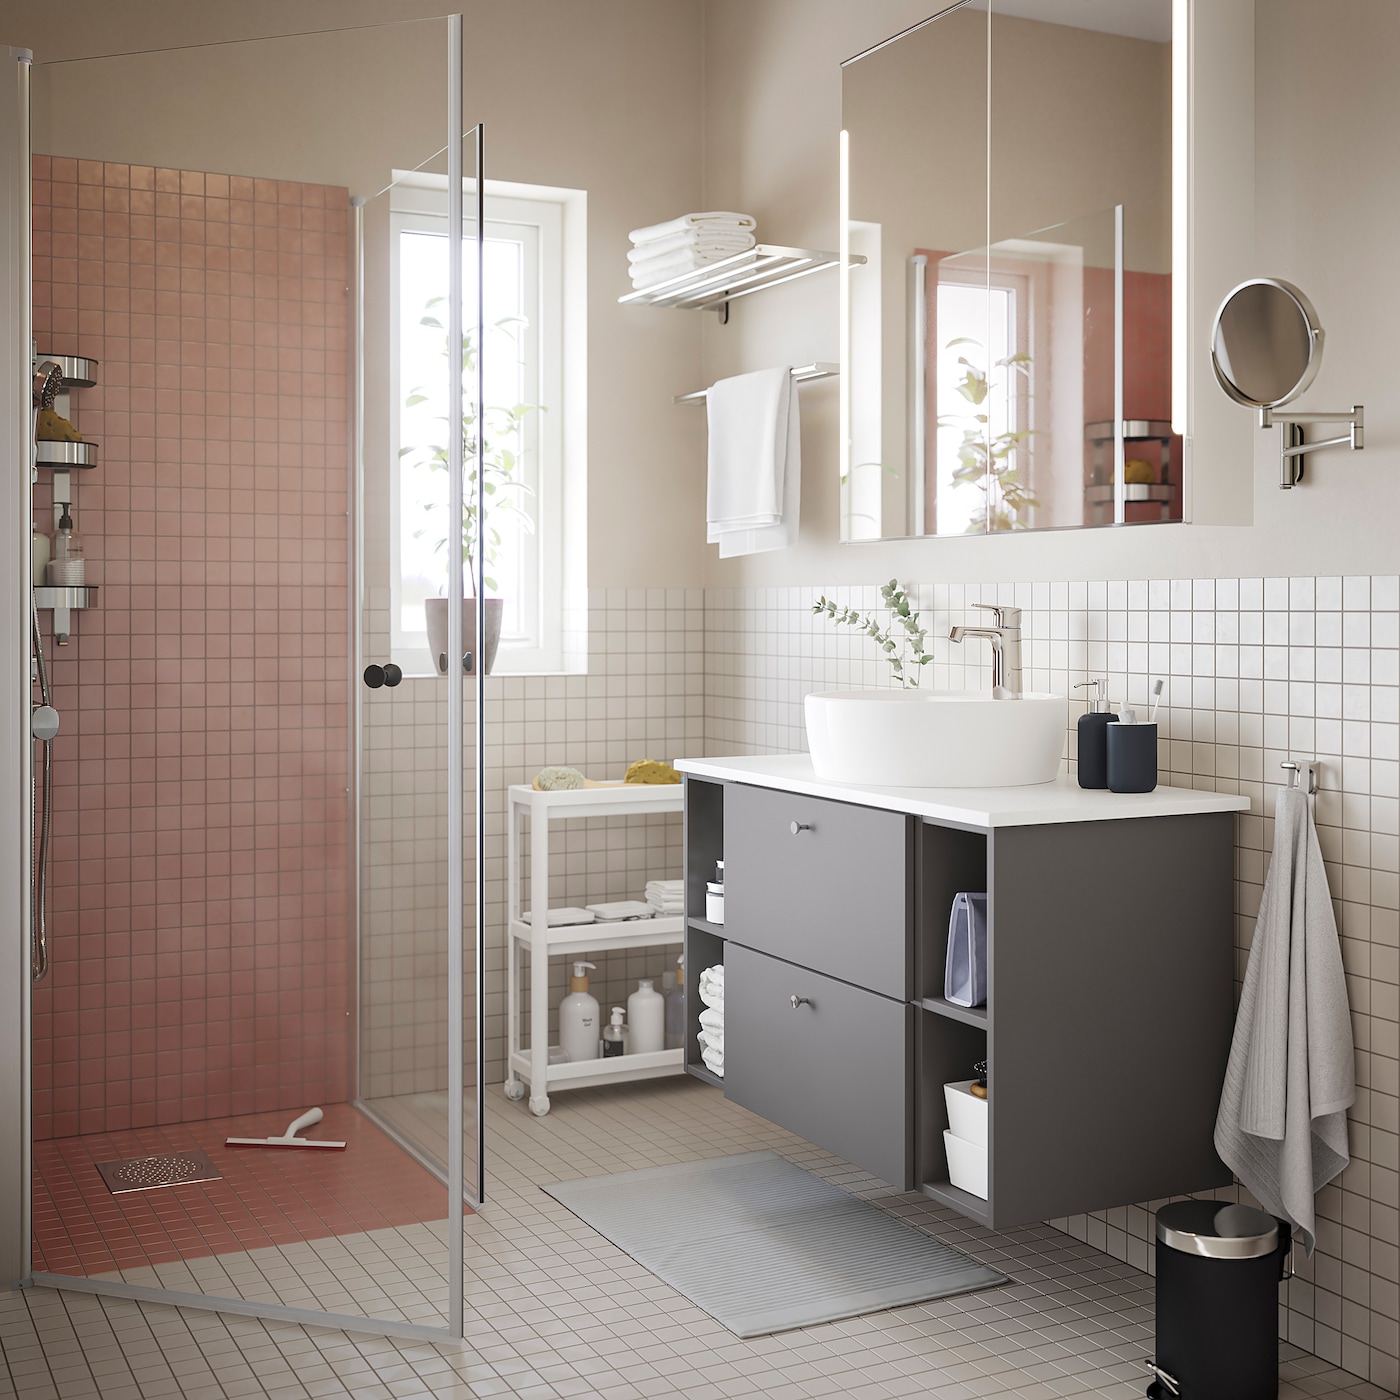 OPPEJEN shower enclosure with 2 doors - IKEA